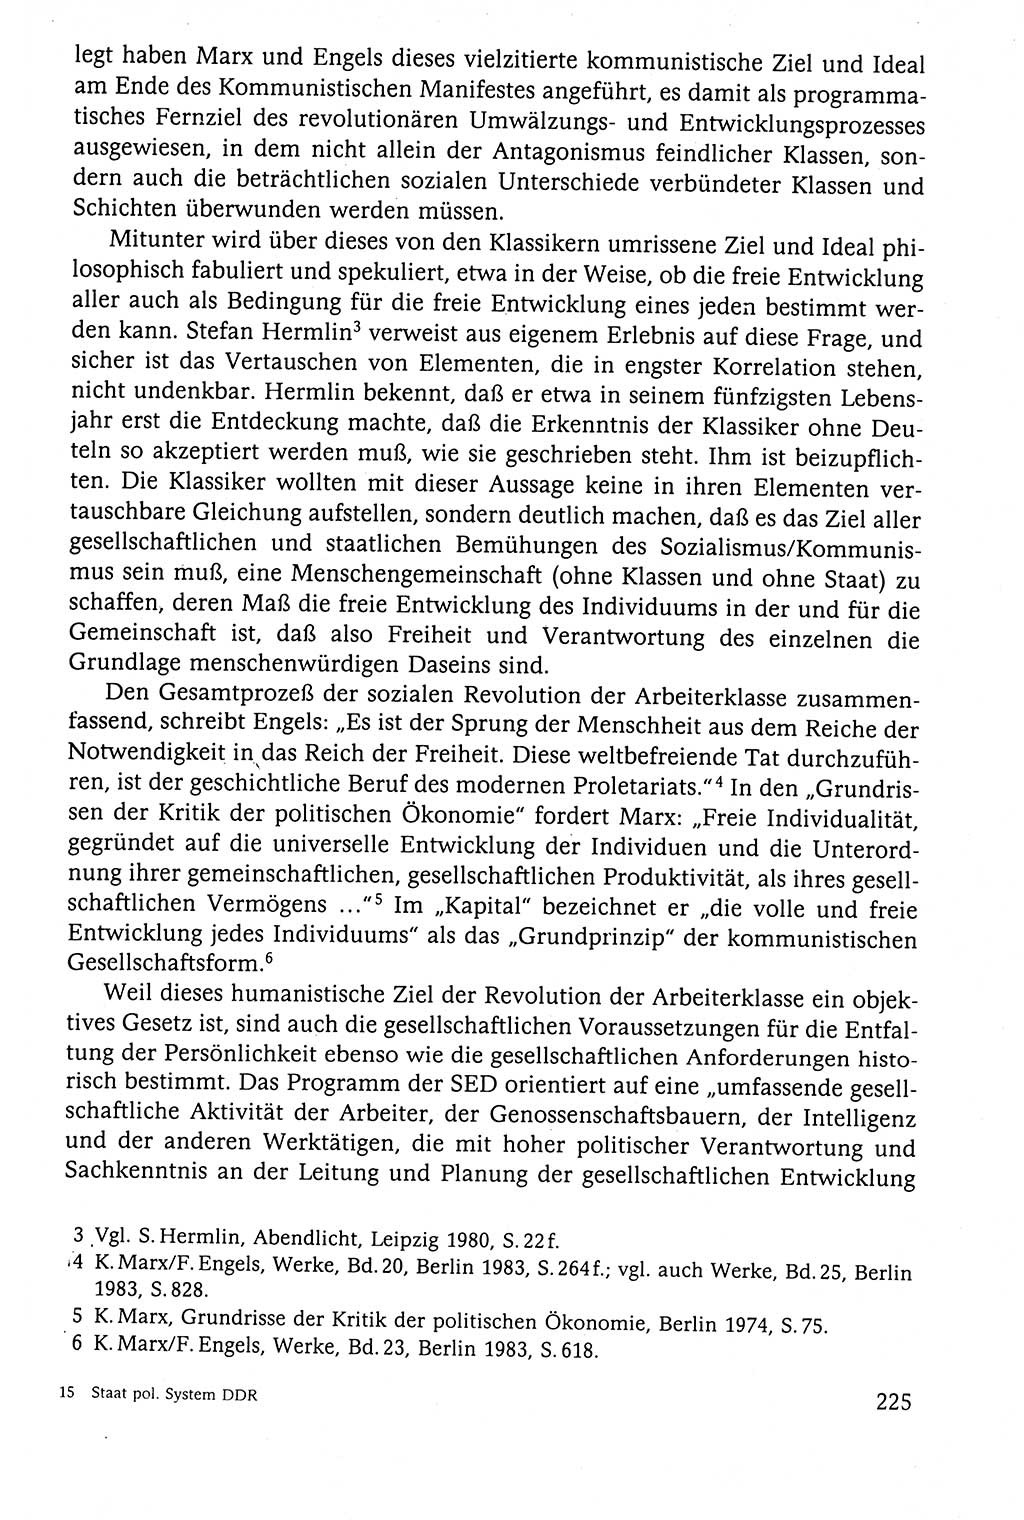 Der Staat im politischen System der DDR (Deutsche Demokratische Republik) 1986, Seite 225 (St. pol. Sys. DDR 1986, S. 225)